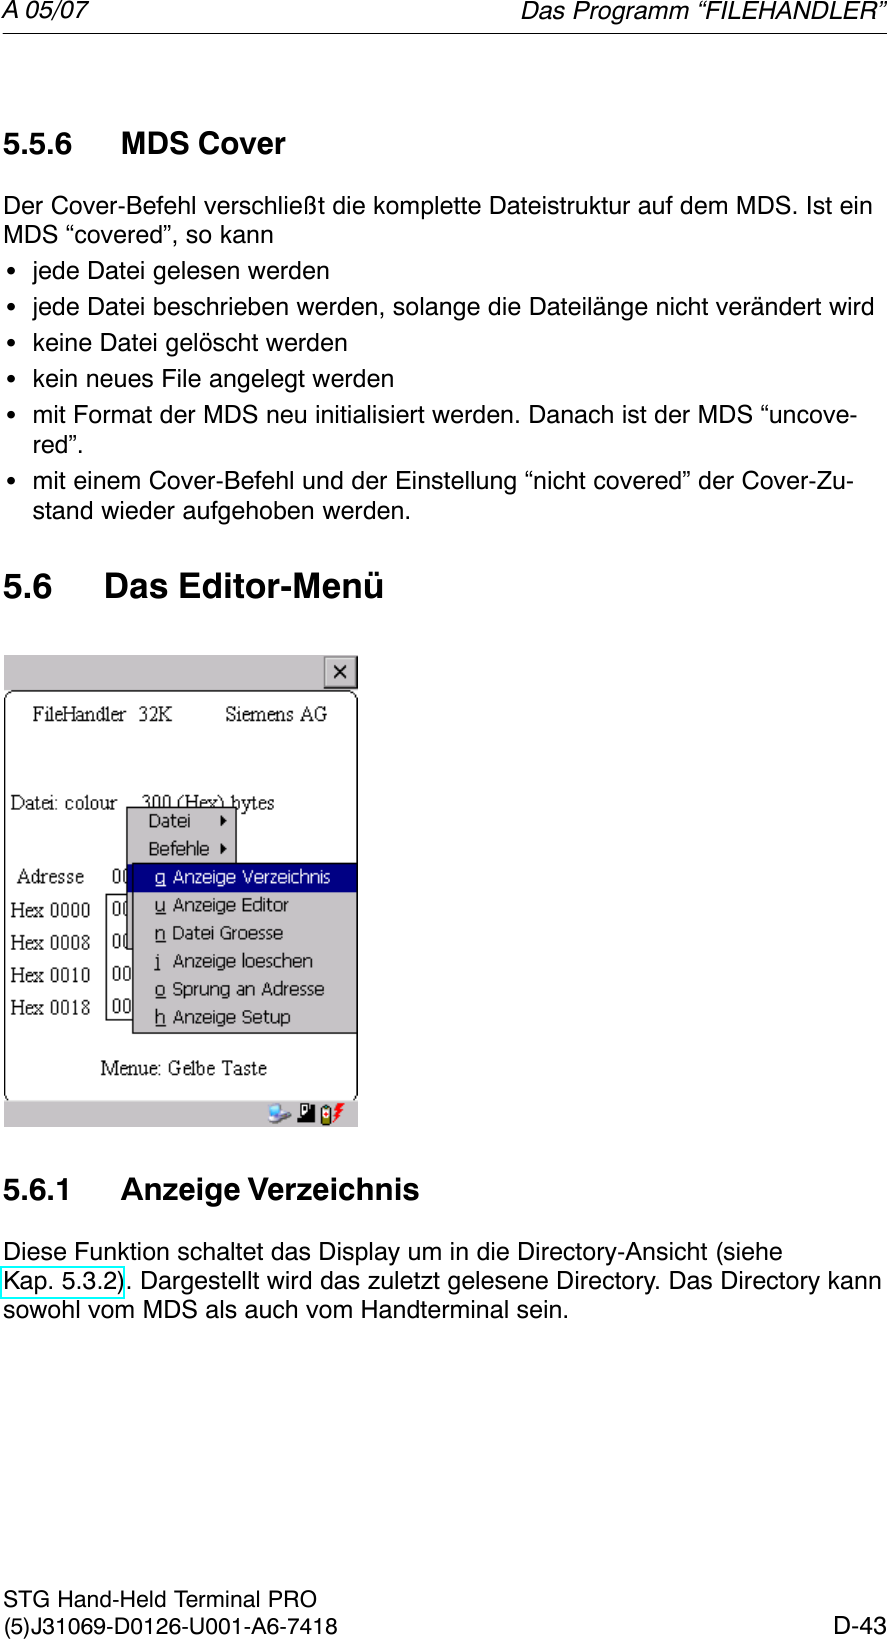 A 05/07D-43STG Hand-Held Terminal PRO(5)J31069-D0126-U001-A6-74185.5.6 MDS CoverDer Cover-Befehl verschließt die komplette Dateistruktur auf dem MDS. Ist einMDS “covered”, so kannSjede Datei gelesen werdenSjede Datei beschrieben werden, solange die Dateilänge nicht verändert wirdSkeine Datei gelöscht werdenSkein neues File angelegt werdenSmit Format der MDS neu initialisiert werden. Danach ist der MDS “uncove-red”.Smit einem Cover-Befehl und der Einstellung “nicht covered” der Cover-Zu-stand wieder aufgehoben werden.5.6 Das Editor-Menü5.6.1 Anzeige VerzeichnisDiese Funktion schaltet das Display um in die Directory-Ansicht (sieheKap. 5.3.2). Dargestellt wird das zuletzt gelesene Directory. Das Directory kannsowohl vom MDS als auch vom Handterminal sein.Das Programm “FILEHANDLER”